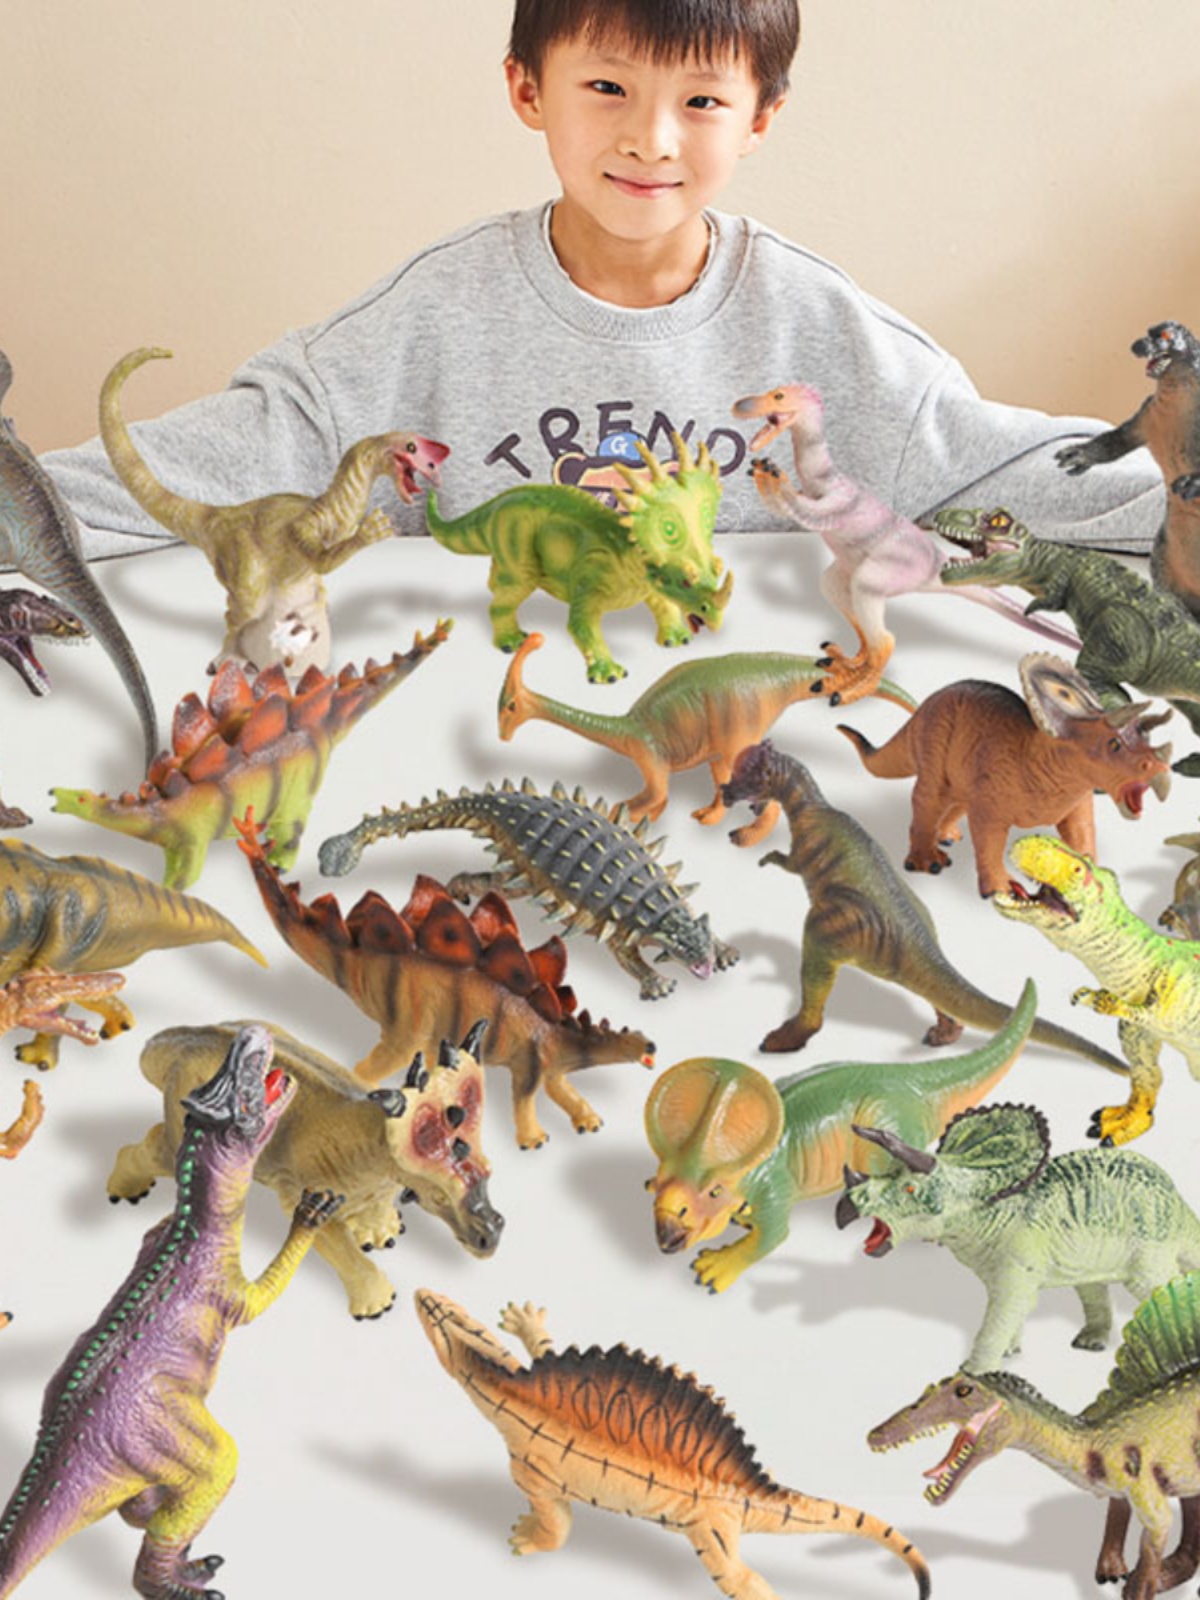 恐龍玩具兒童小男孩三角龍軟膠套裝 給孩子一個大霸王龍世界 (8.3折)